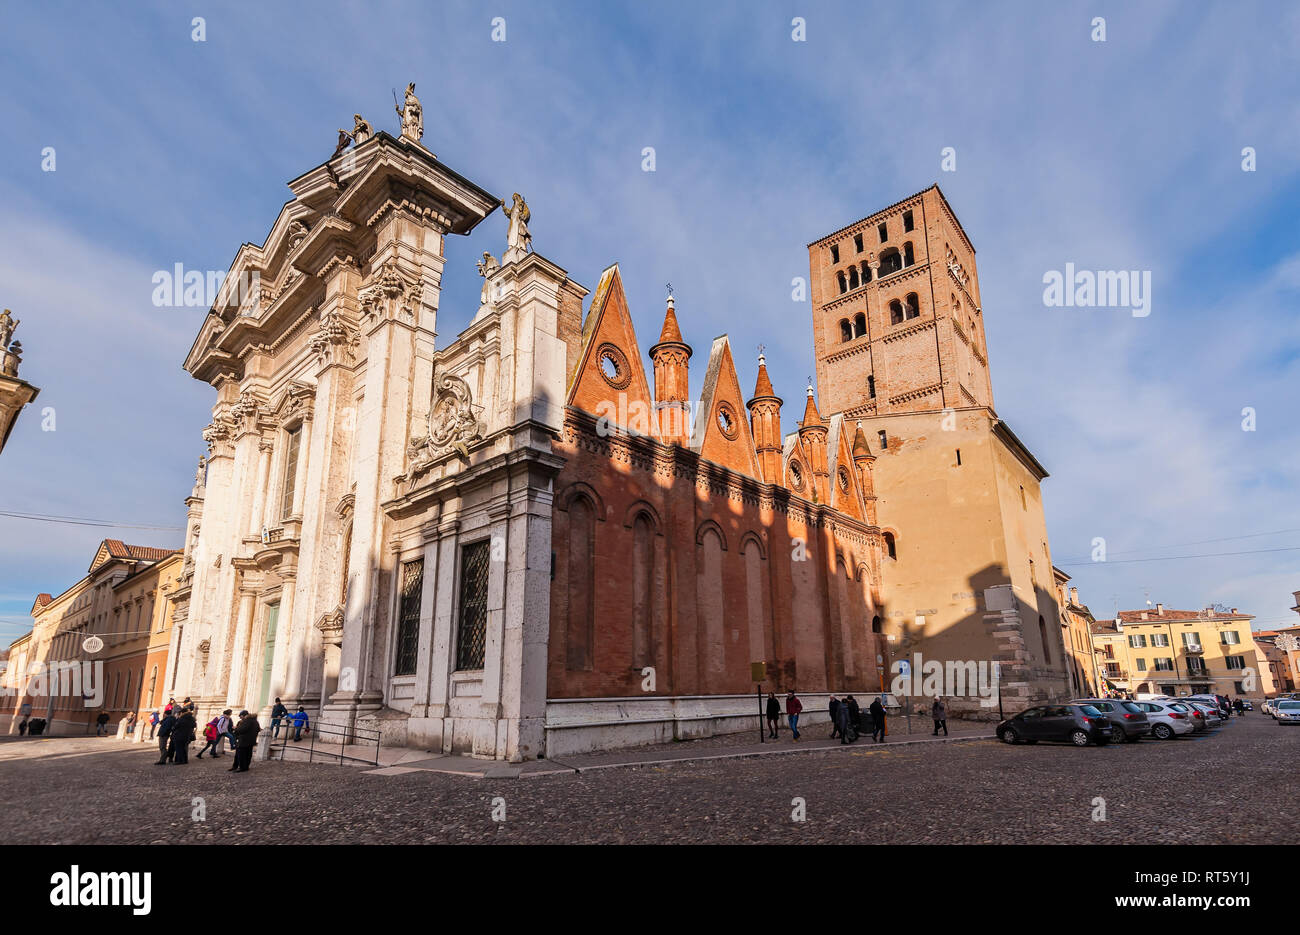 Mantova, Italy - January 4 2019: Mantua Cathedral (Cattedrale di San Pietro apostolo, Duomo di Mantova) in Mantua, Lombardy, northern Italy, is a Roma Stock Photo